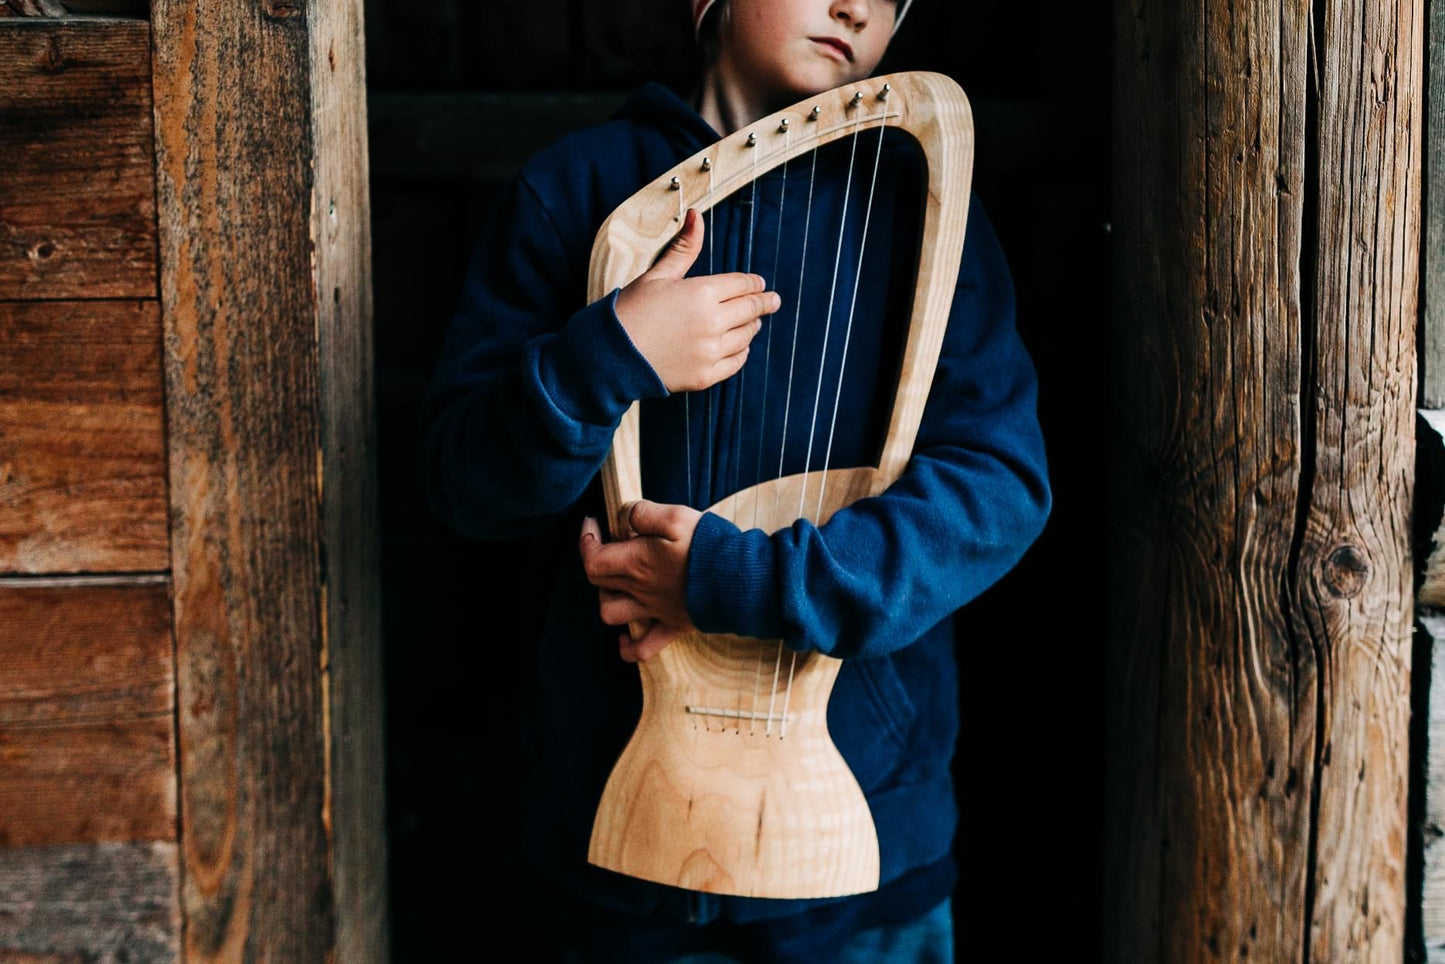 Choroi pentatonic Children's Harp 7 Strings